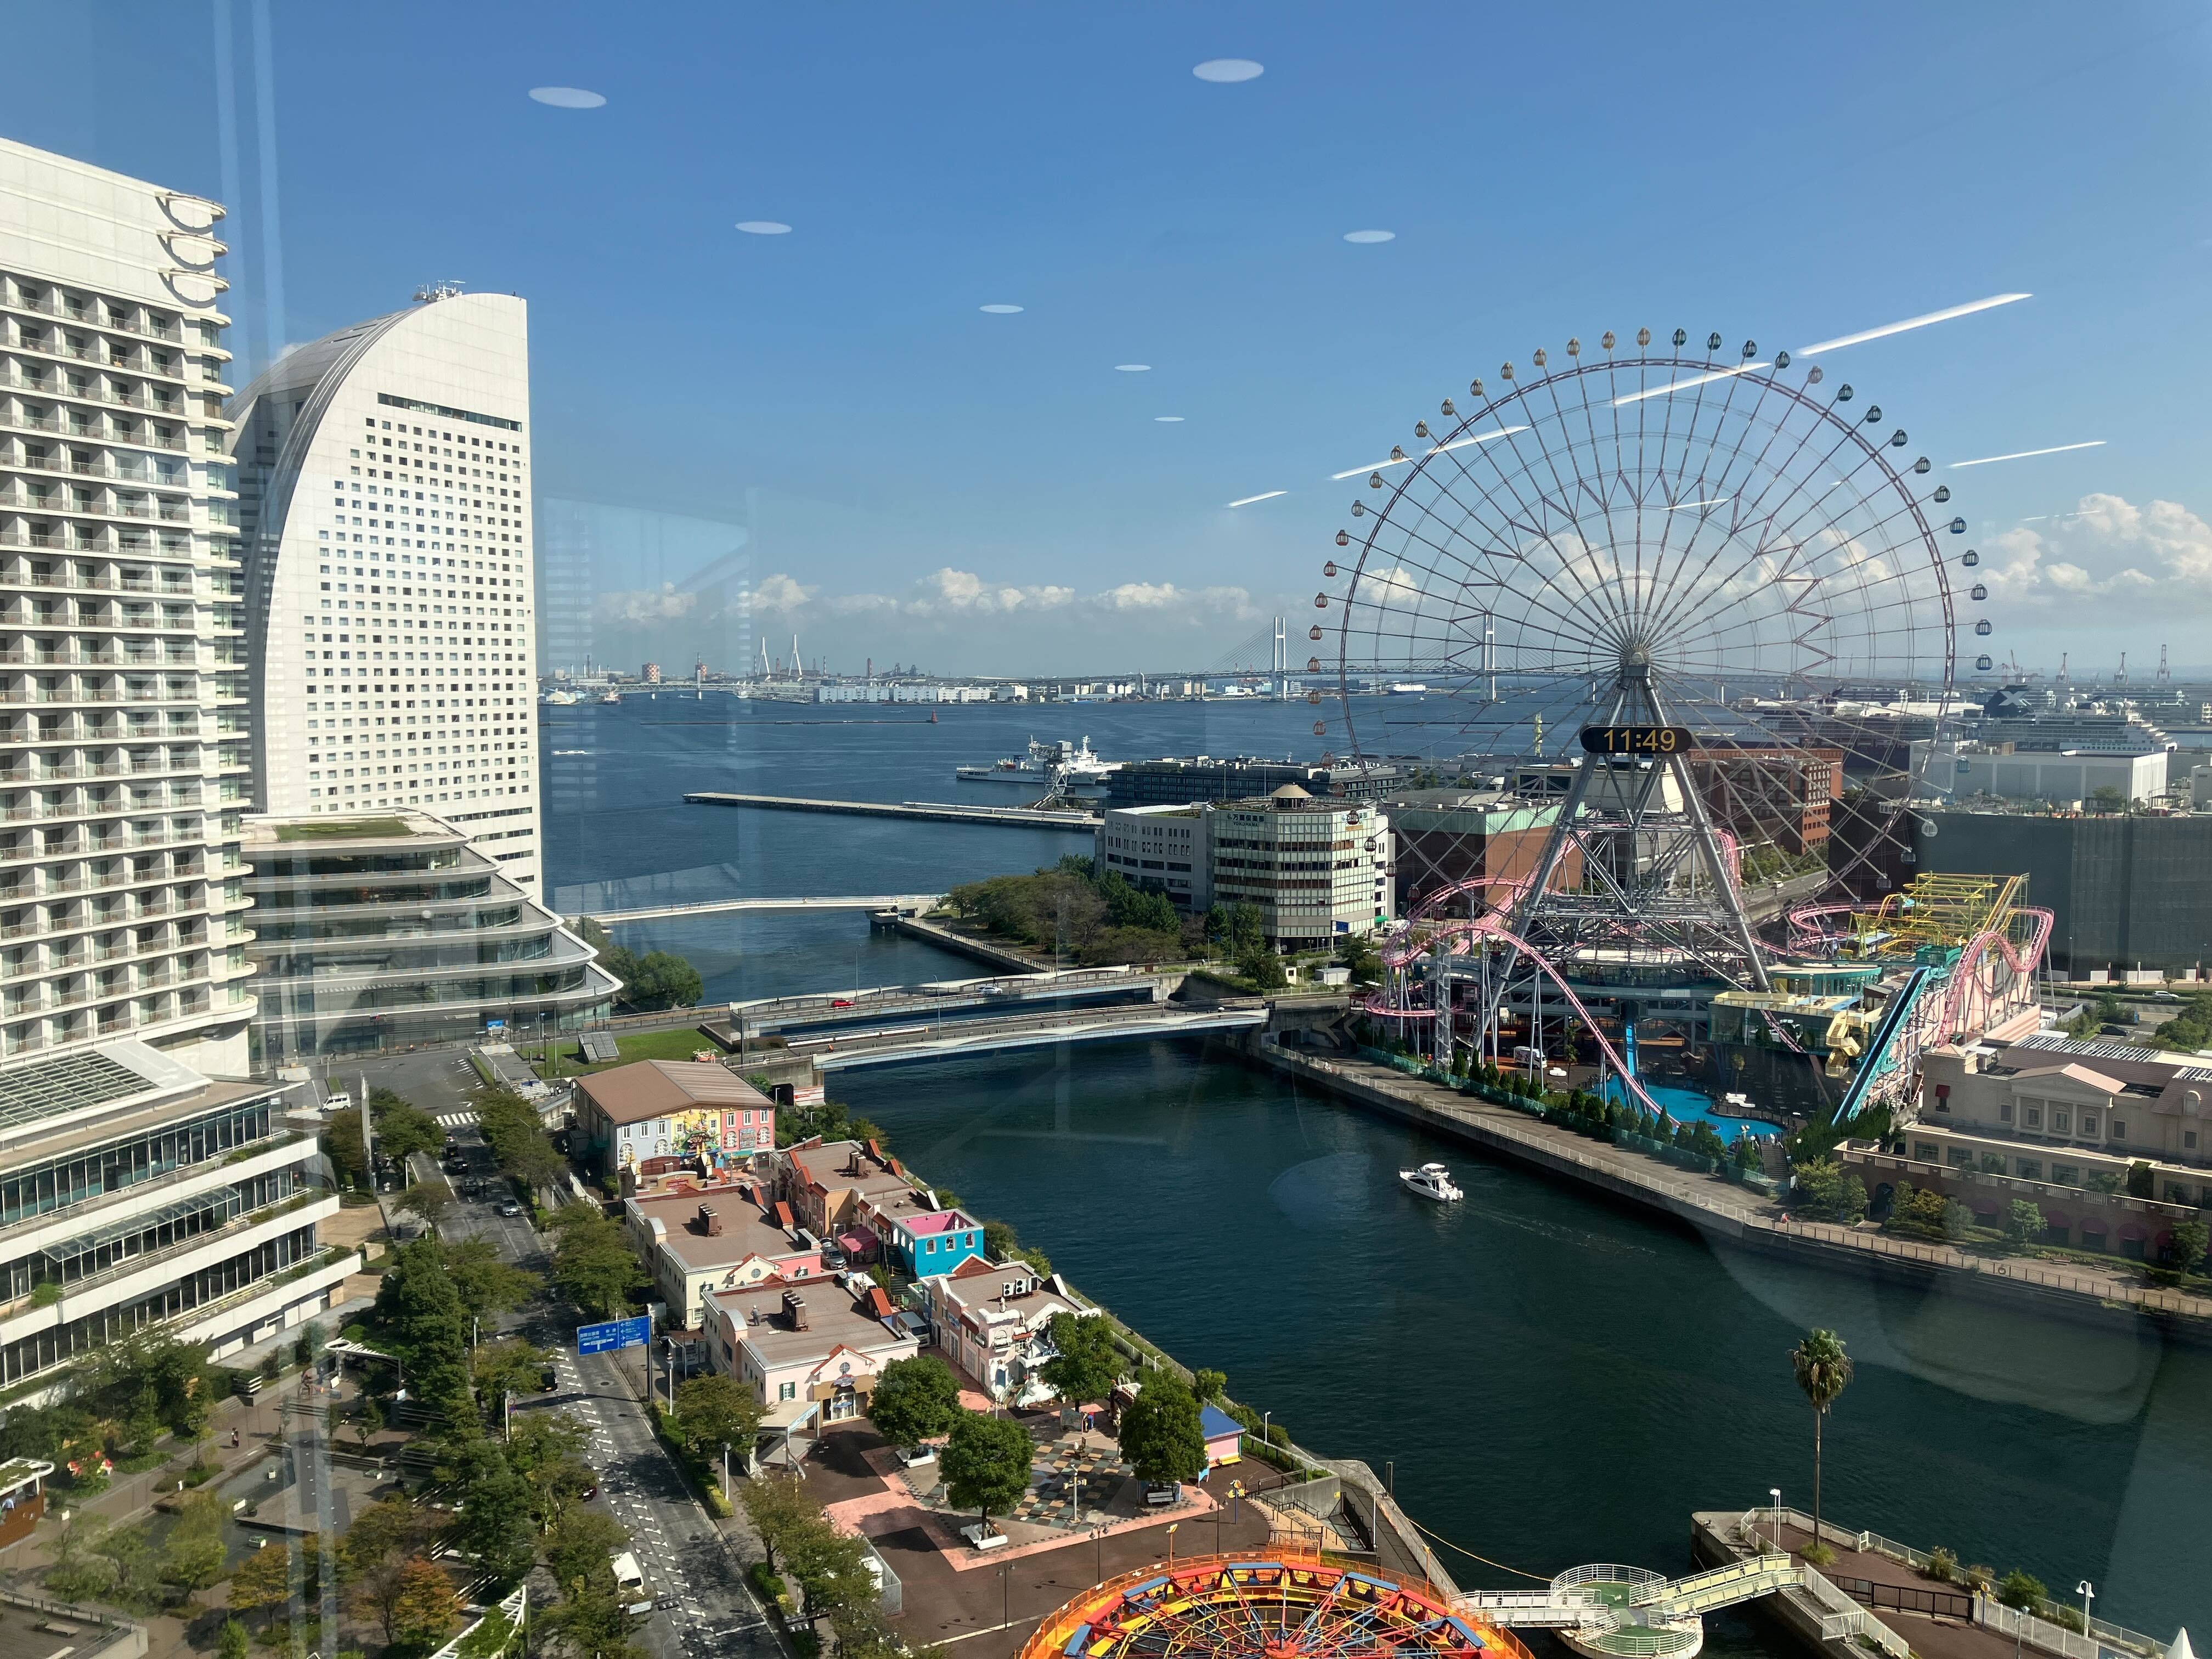 グローバルカンパニーを目指すとともに、日本初・横浜発のスタートアップであるというオリジンを大切にし、提供するサービスの基準をジャパンクオリティに置いている。